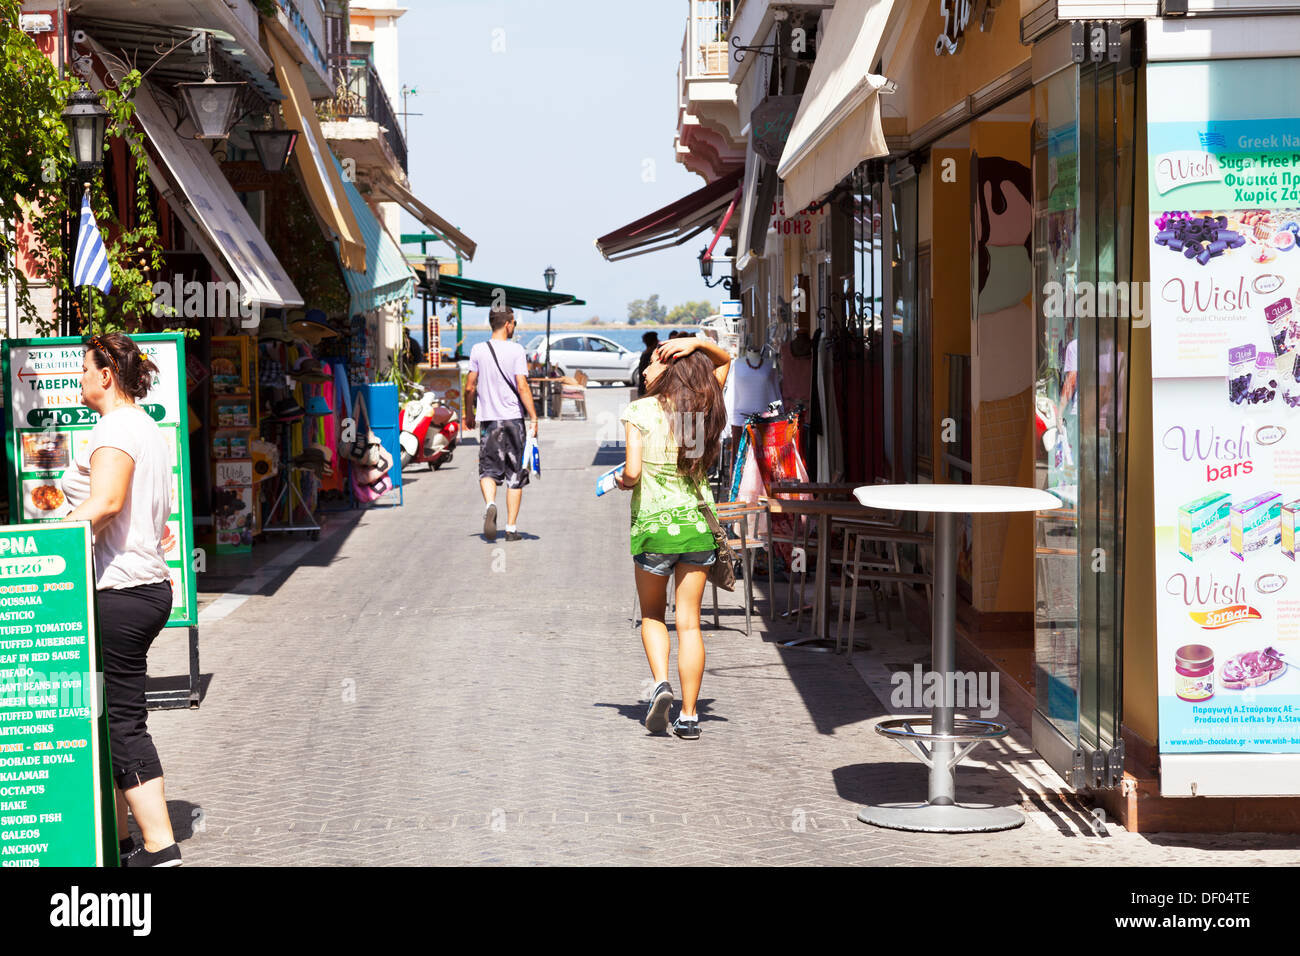 Les boutiques touristiques à Lefkada Lefkas Ville île grecque Grèce tourisme autour de consommateurs à la recherche Banque D'Images